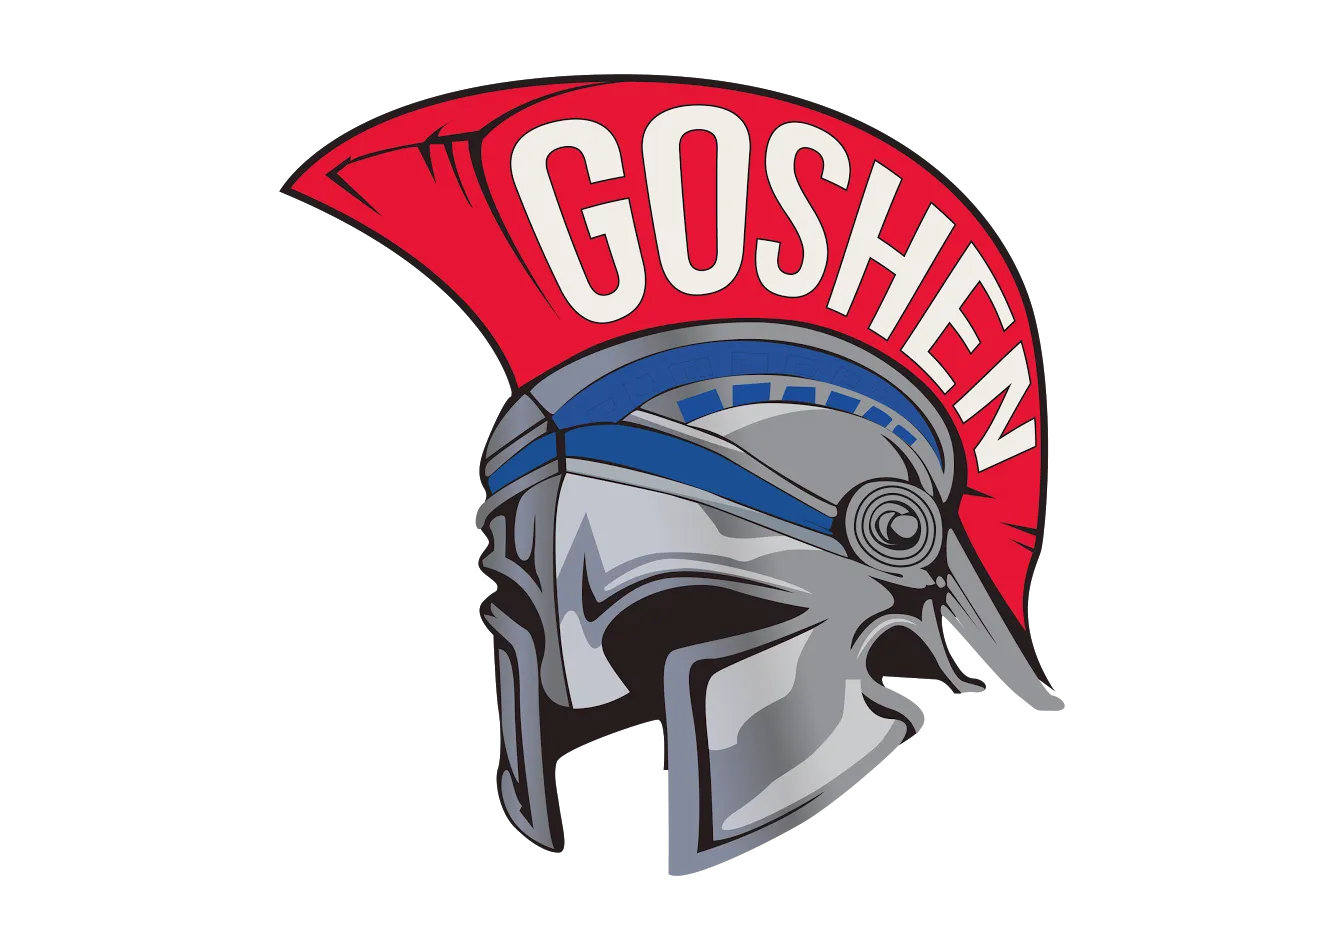 Goshen Central High School